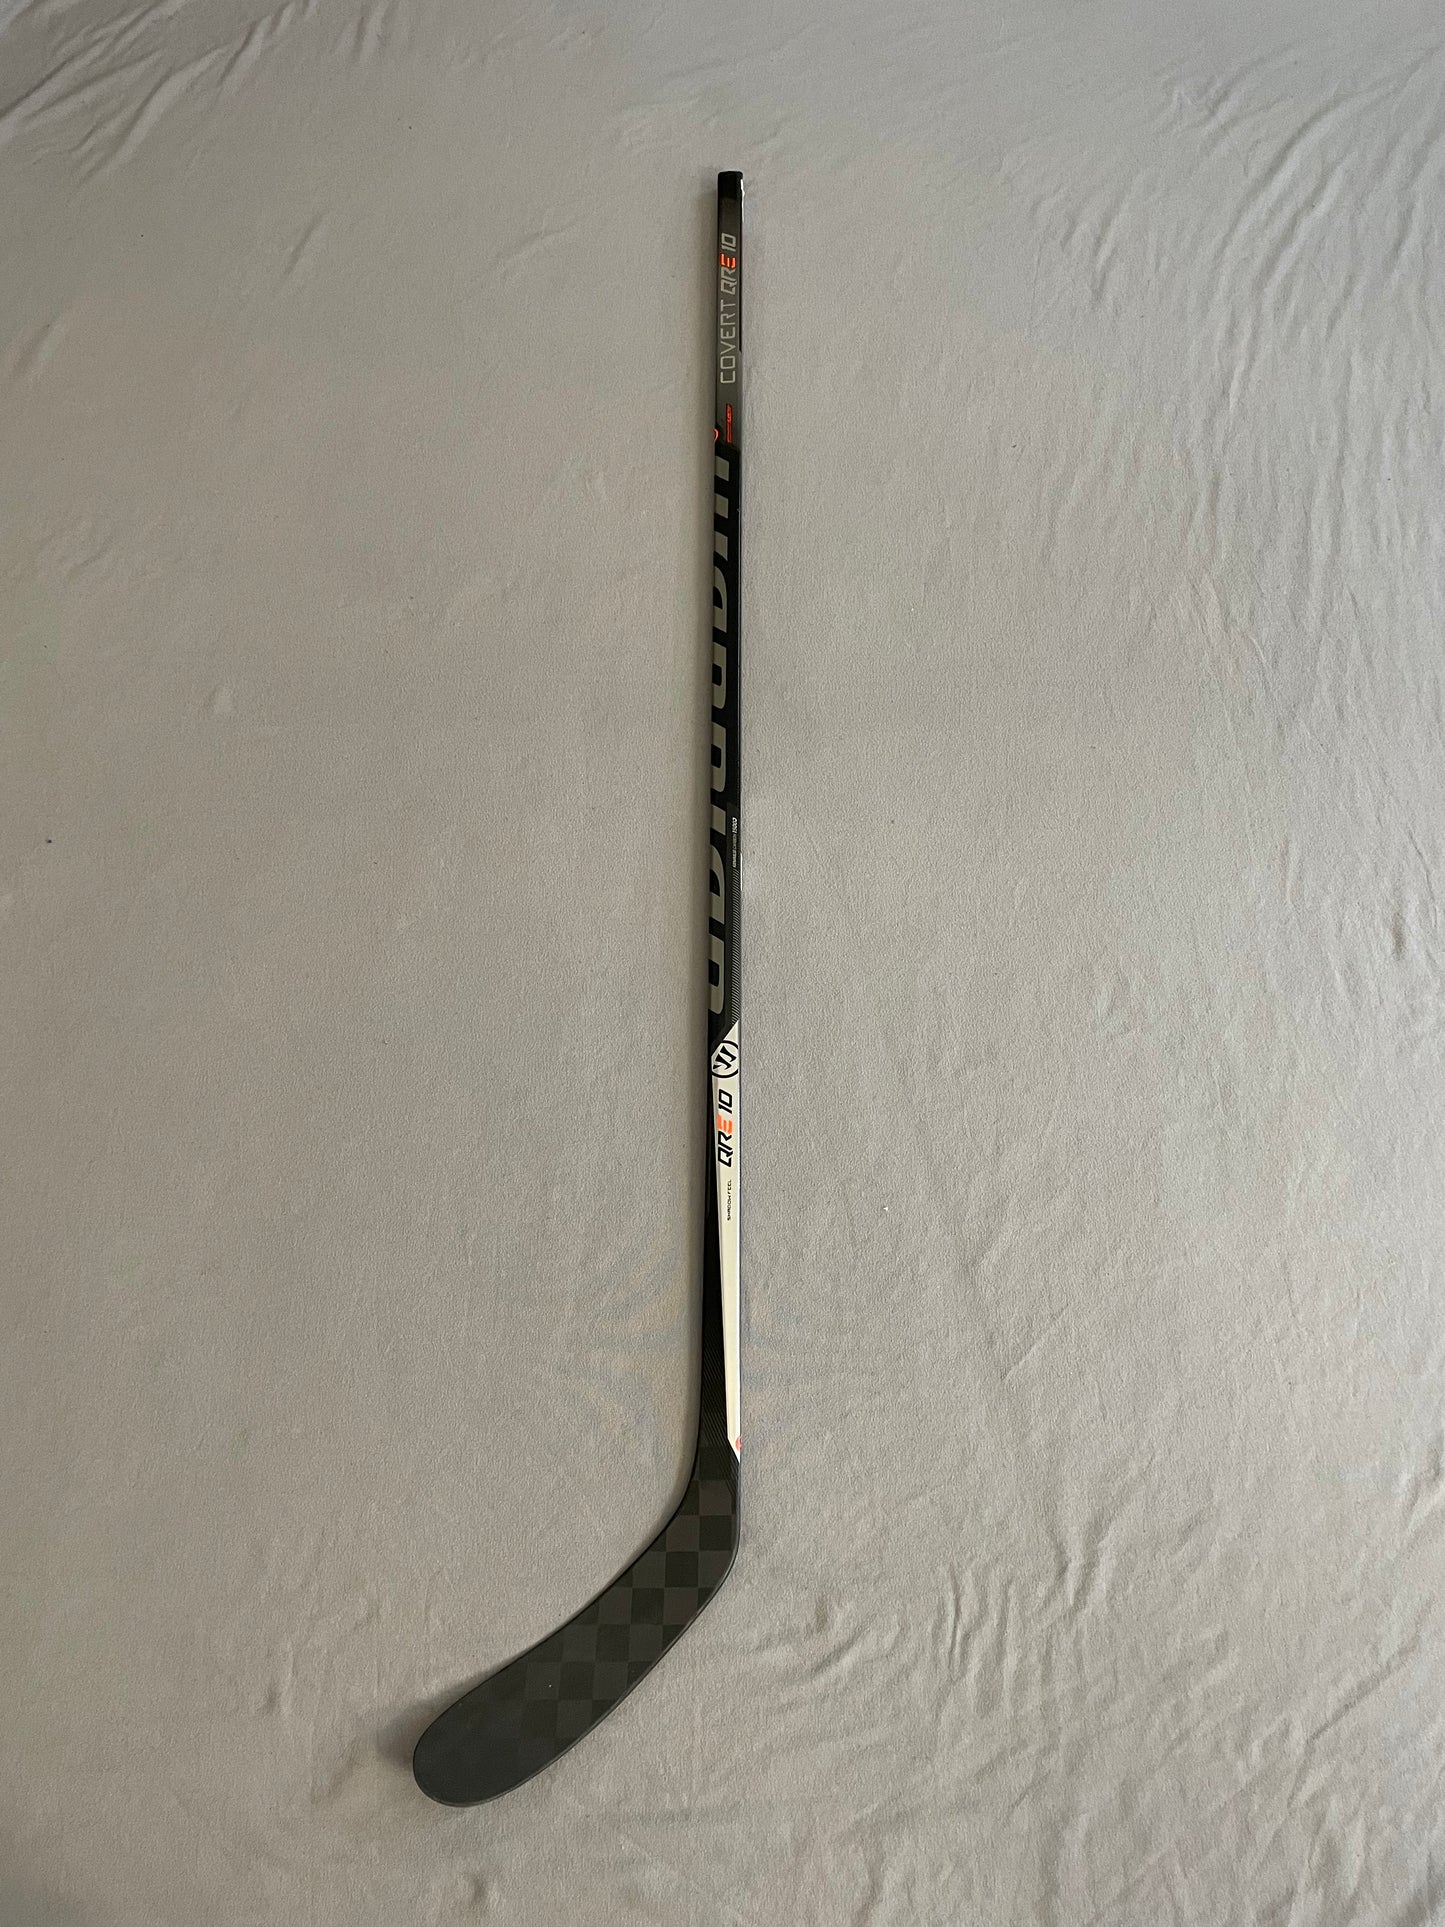 Like New (Demo) Senior/Intermediate Warrior Covert QRE10 Hockey Stick (Black/Silver Model)